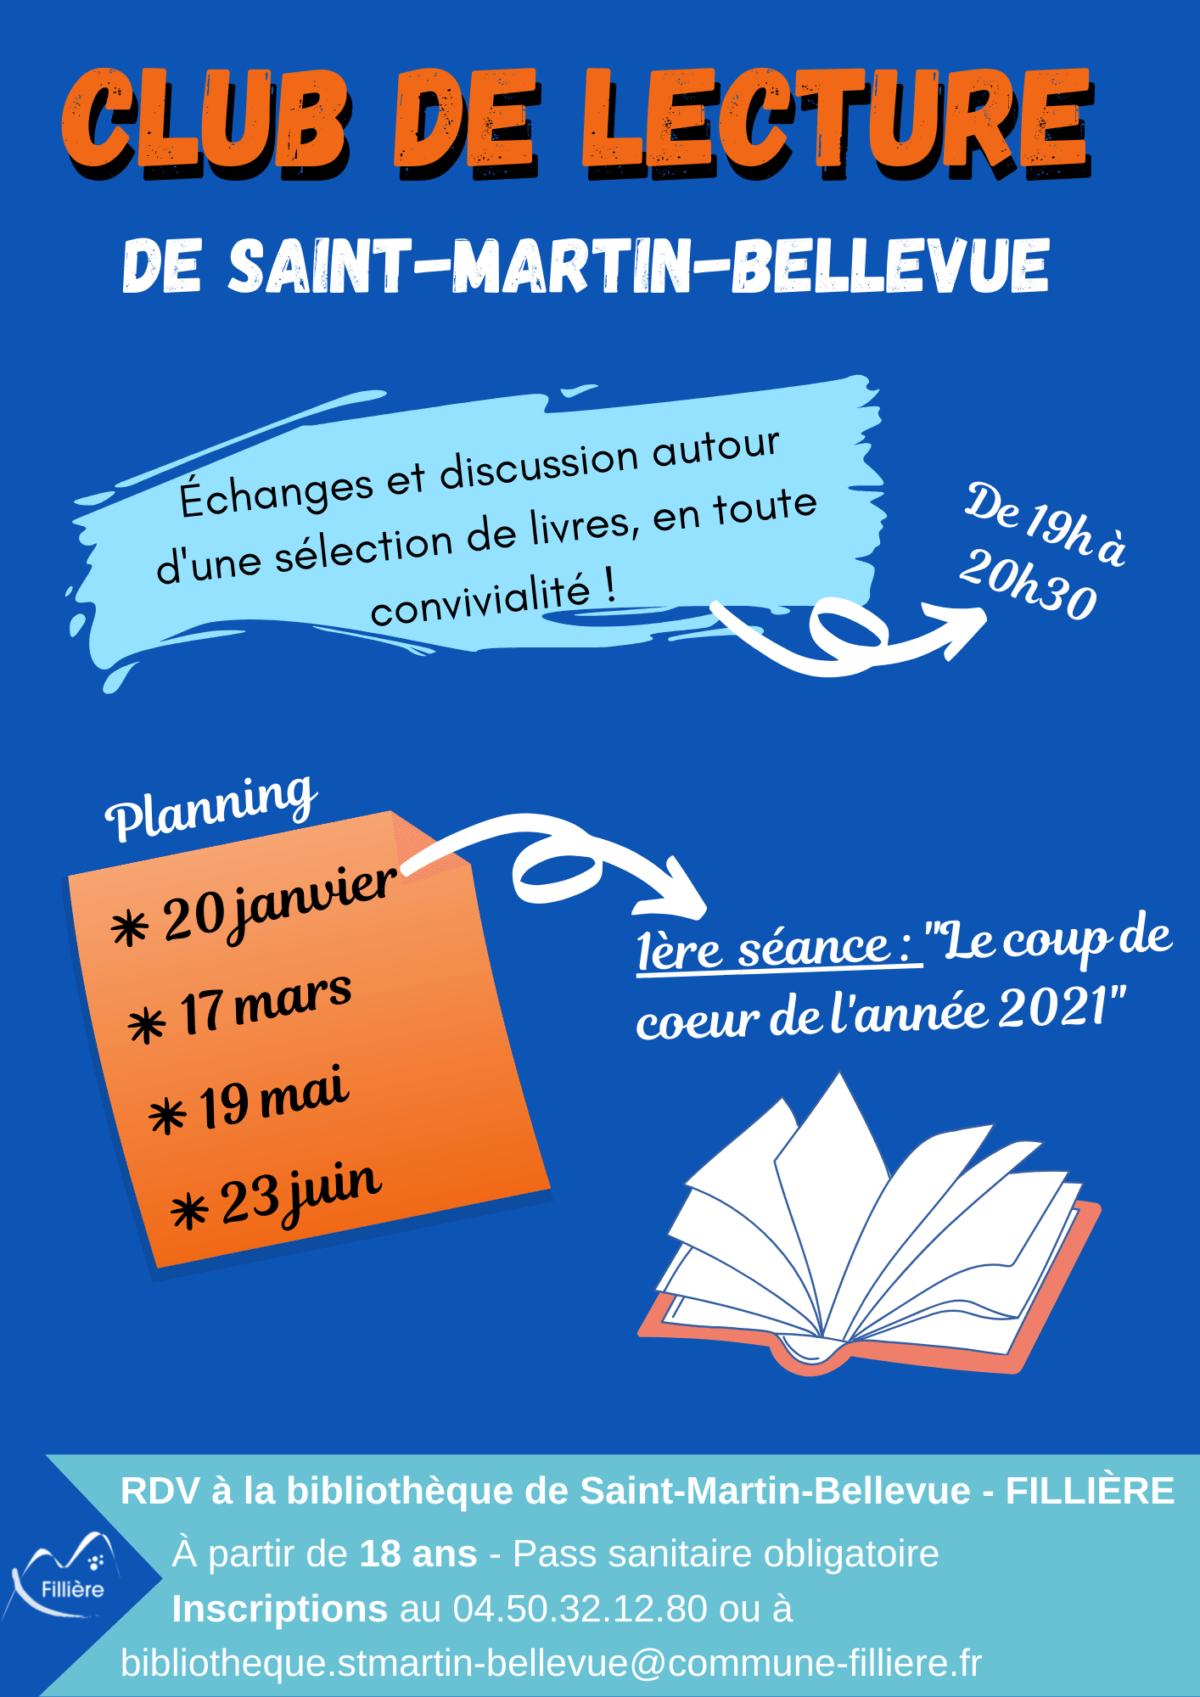 Club de lecture de Saint-Martin-Bellevue